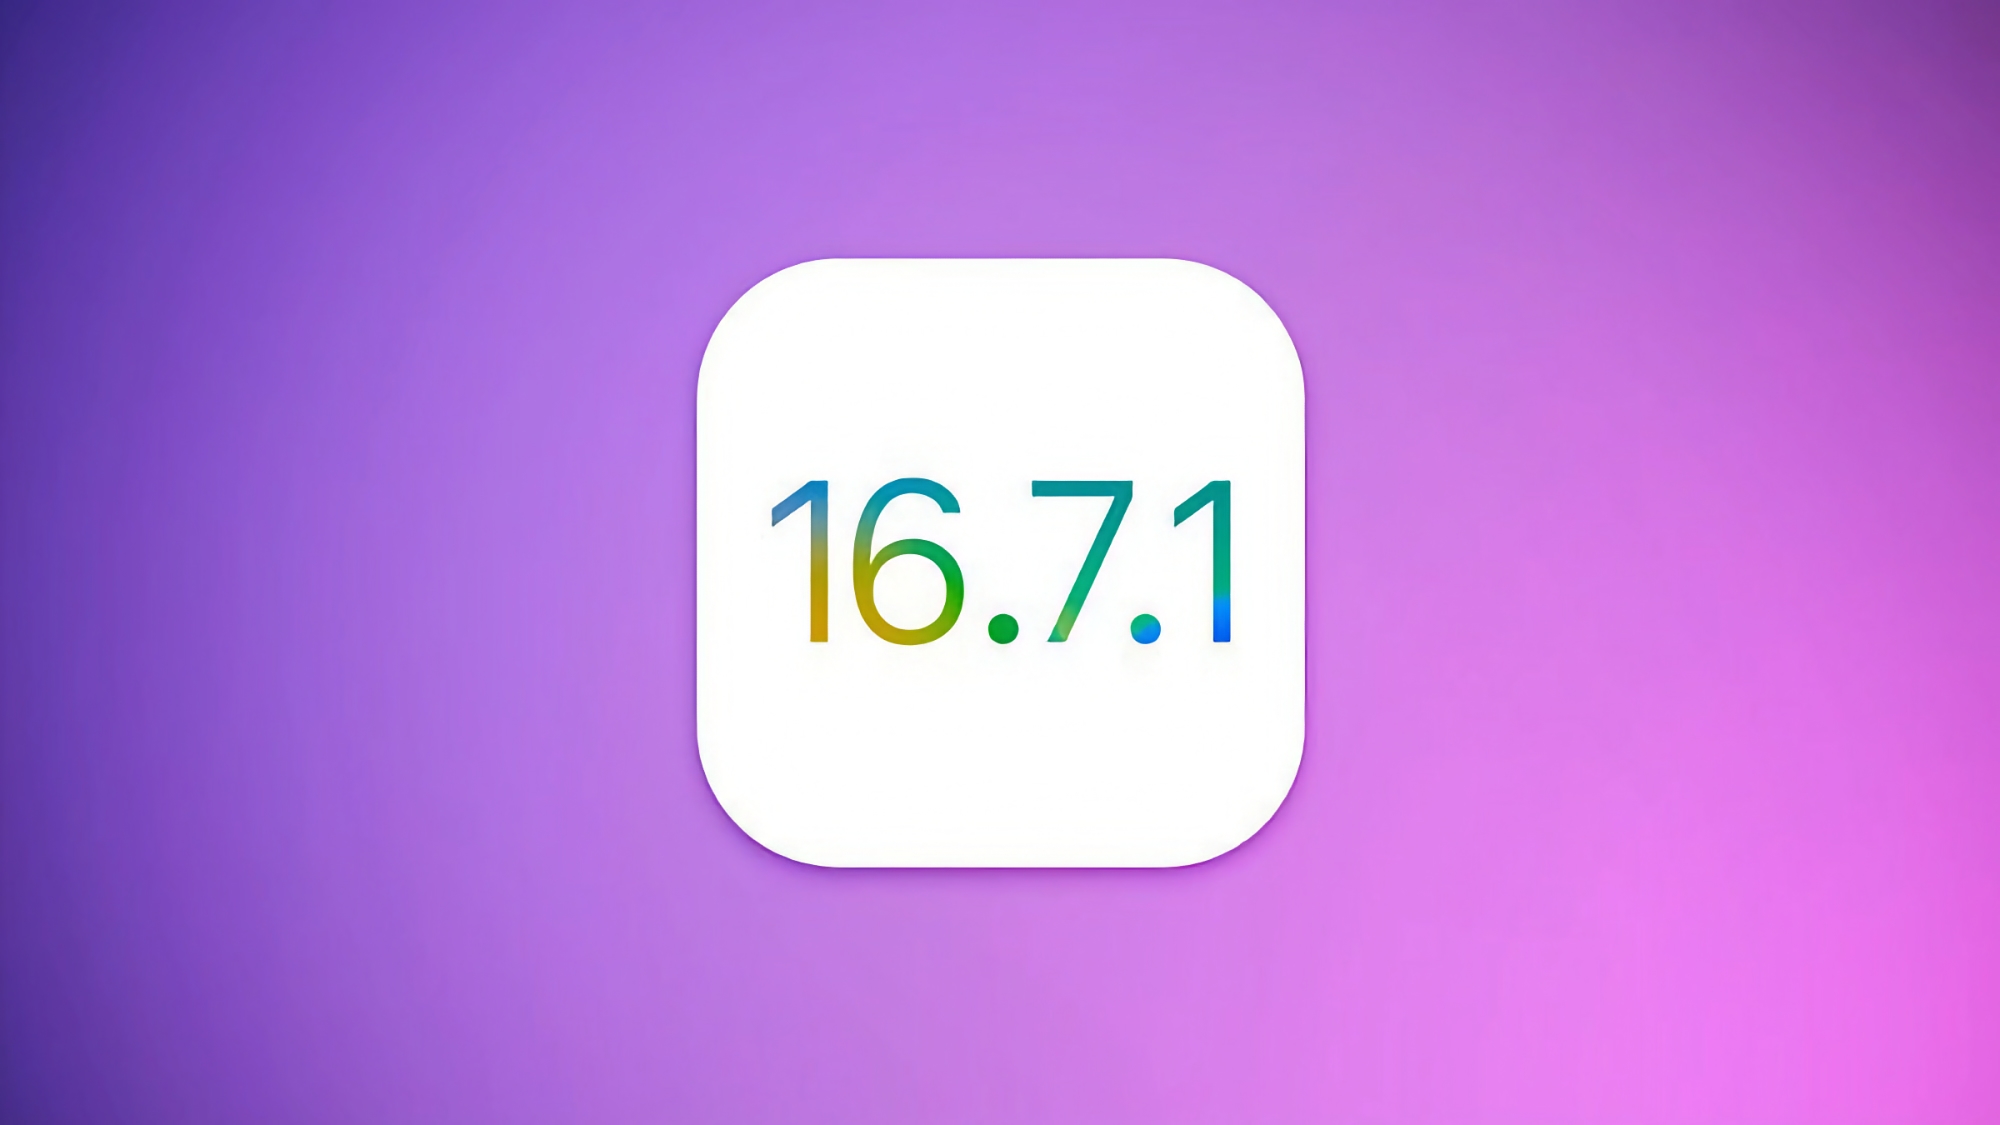 Oudere iPhone- en iPad-modellen hebben iOS 16.7.1 ontvangen: wat is er nieuw?